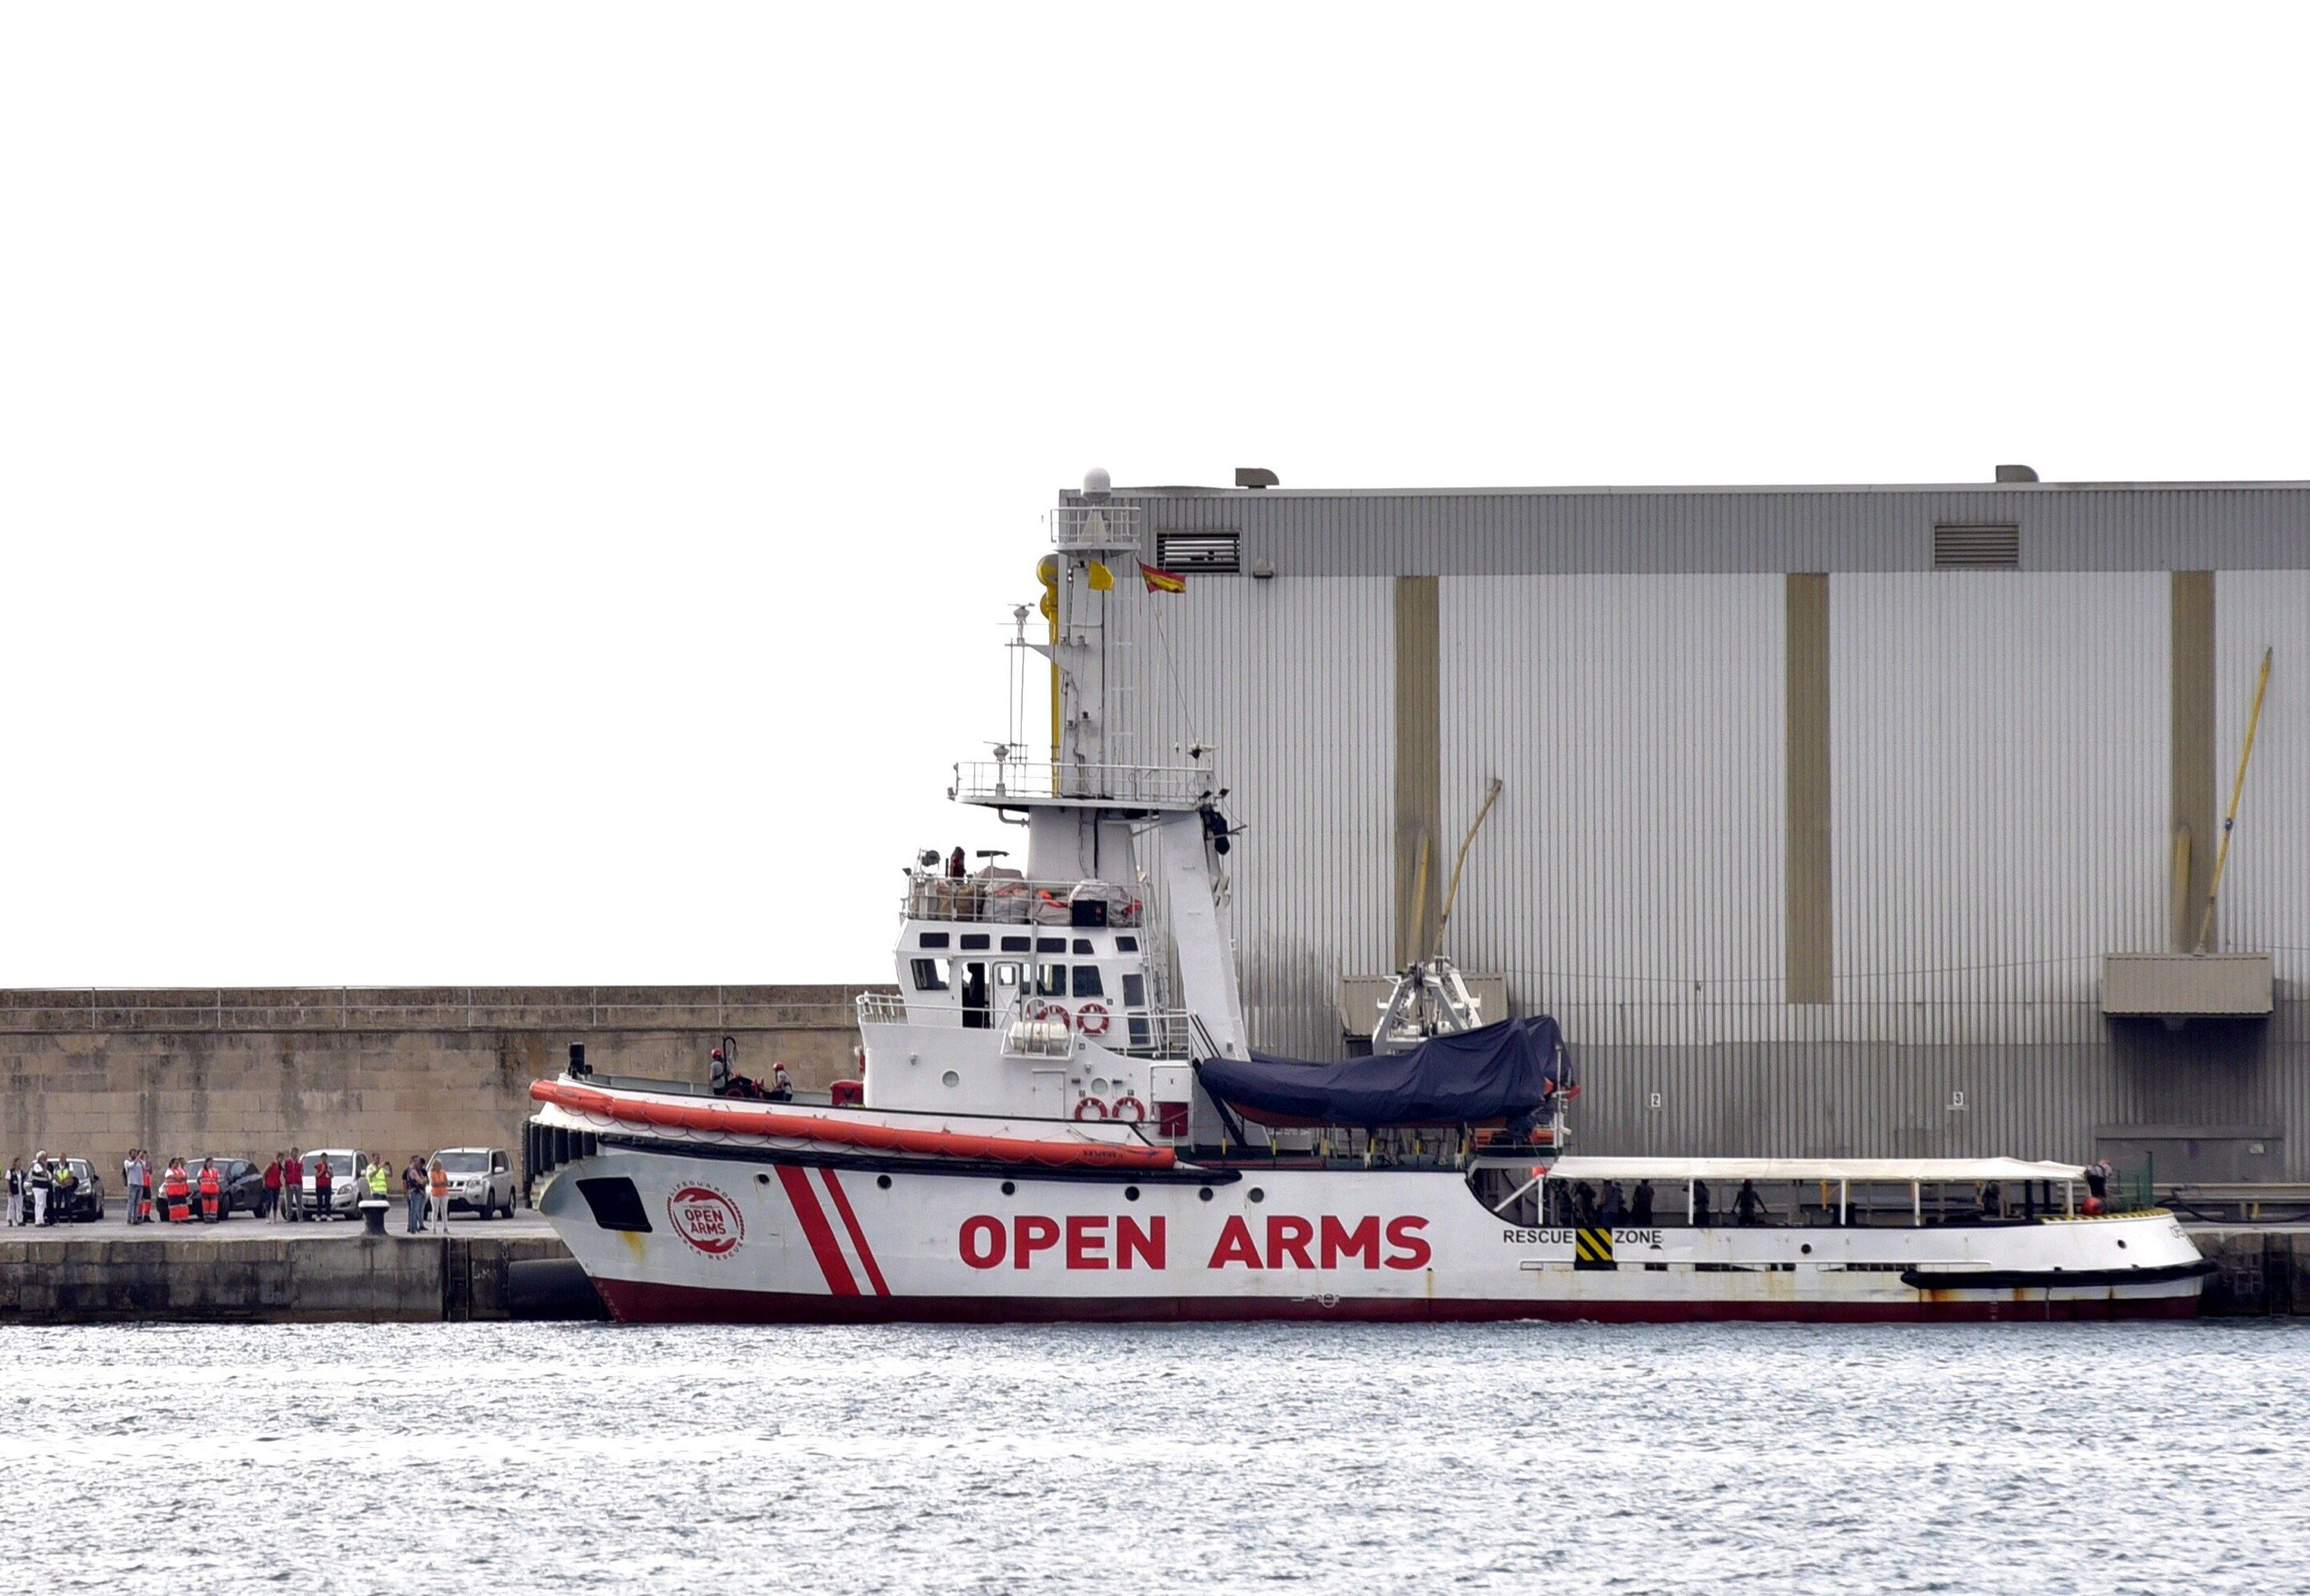 Elbarco de la Organización de Salvamento Open Arms en el puerto de Palma.